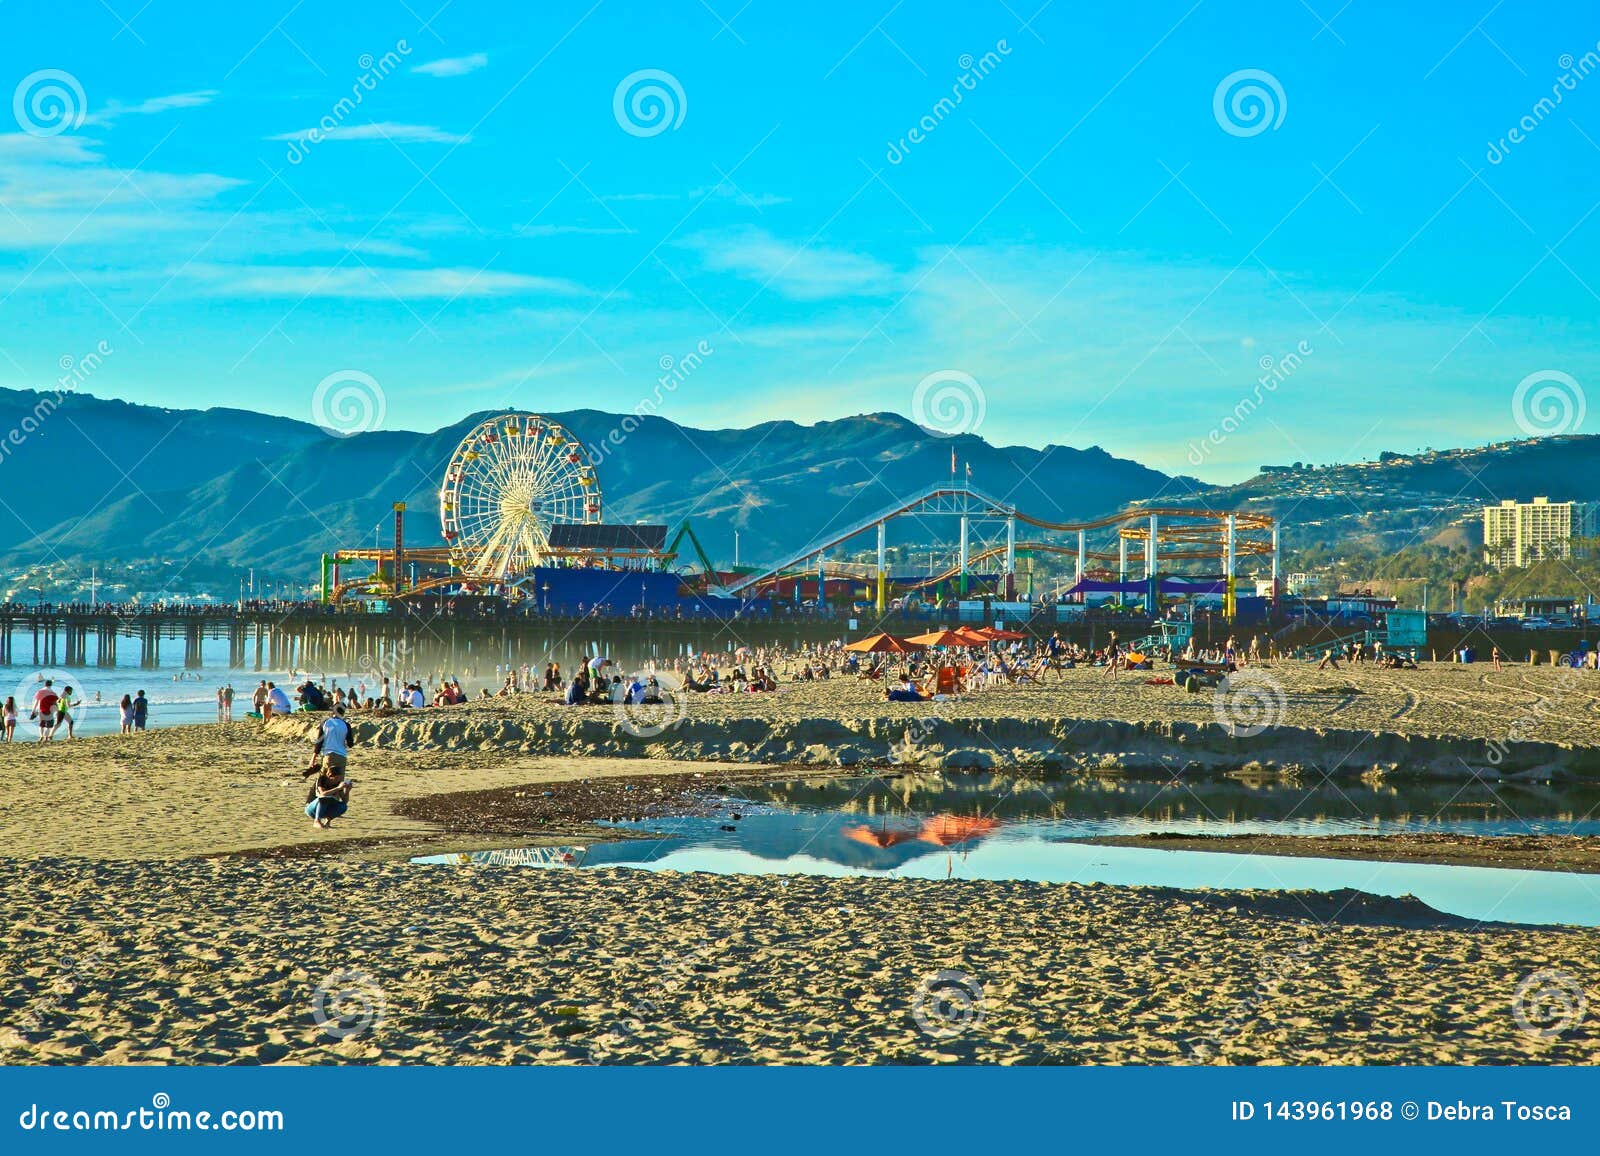 Santa Monica Pier Carnival Seaside Stock Photo Image Of